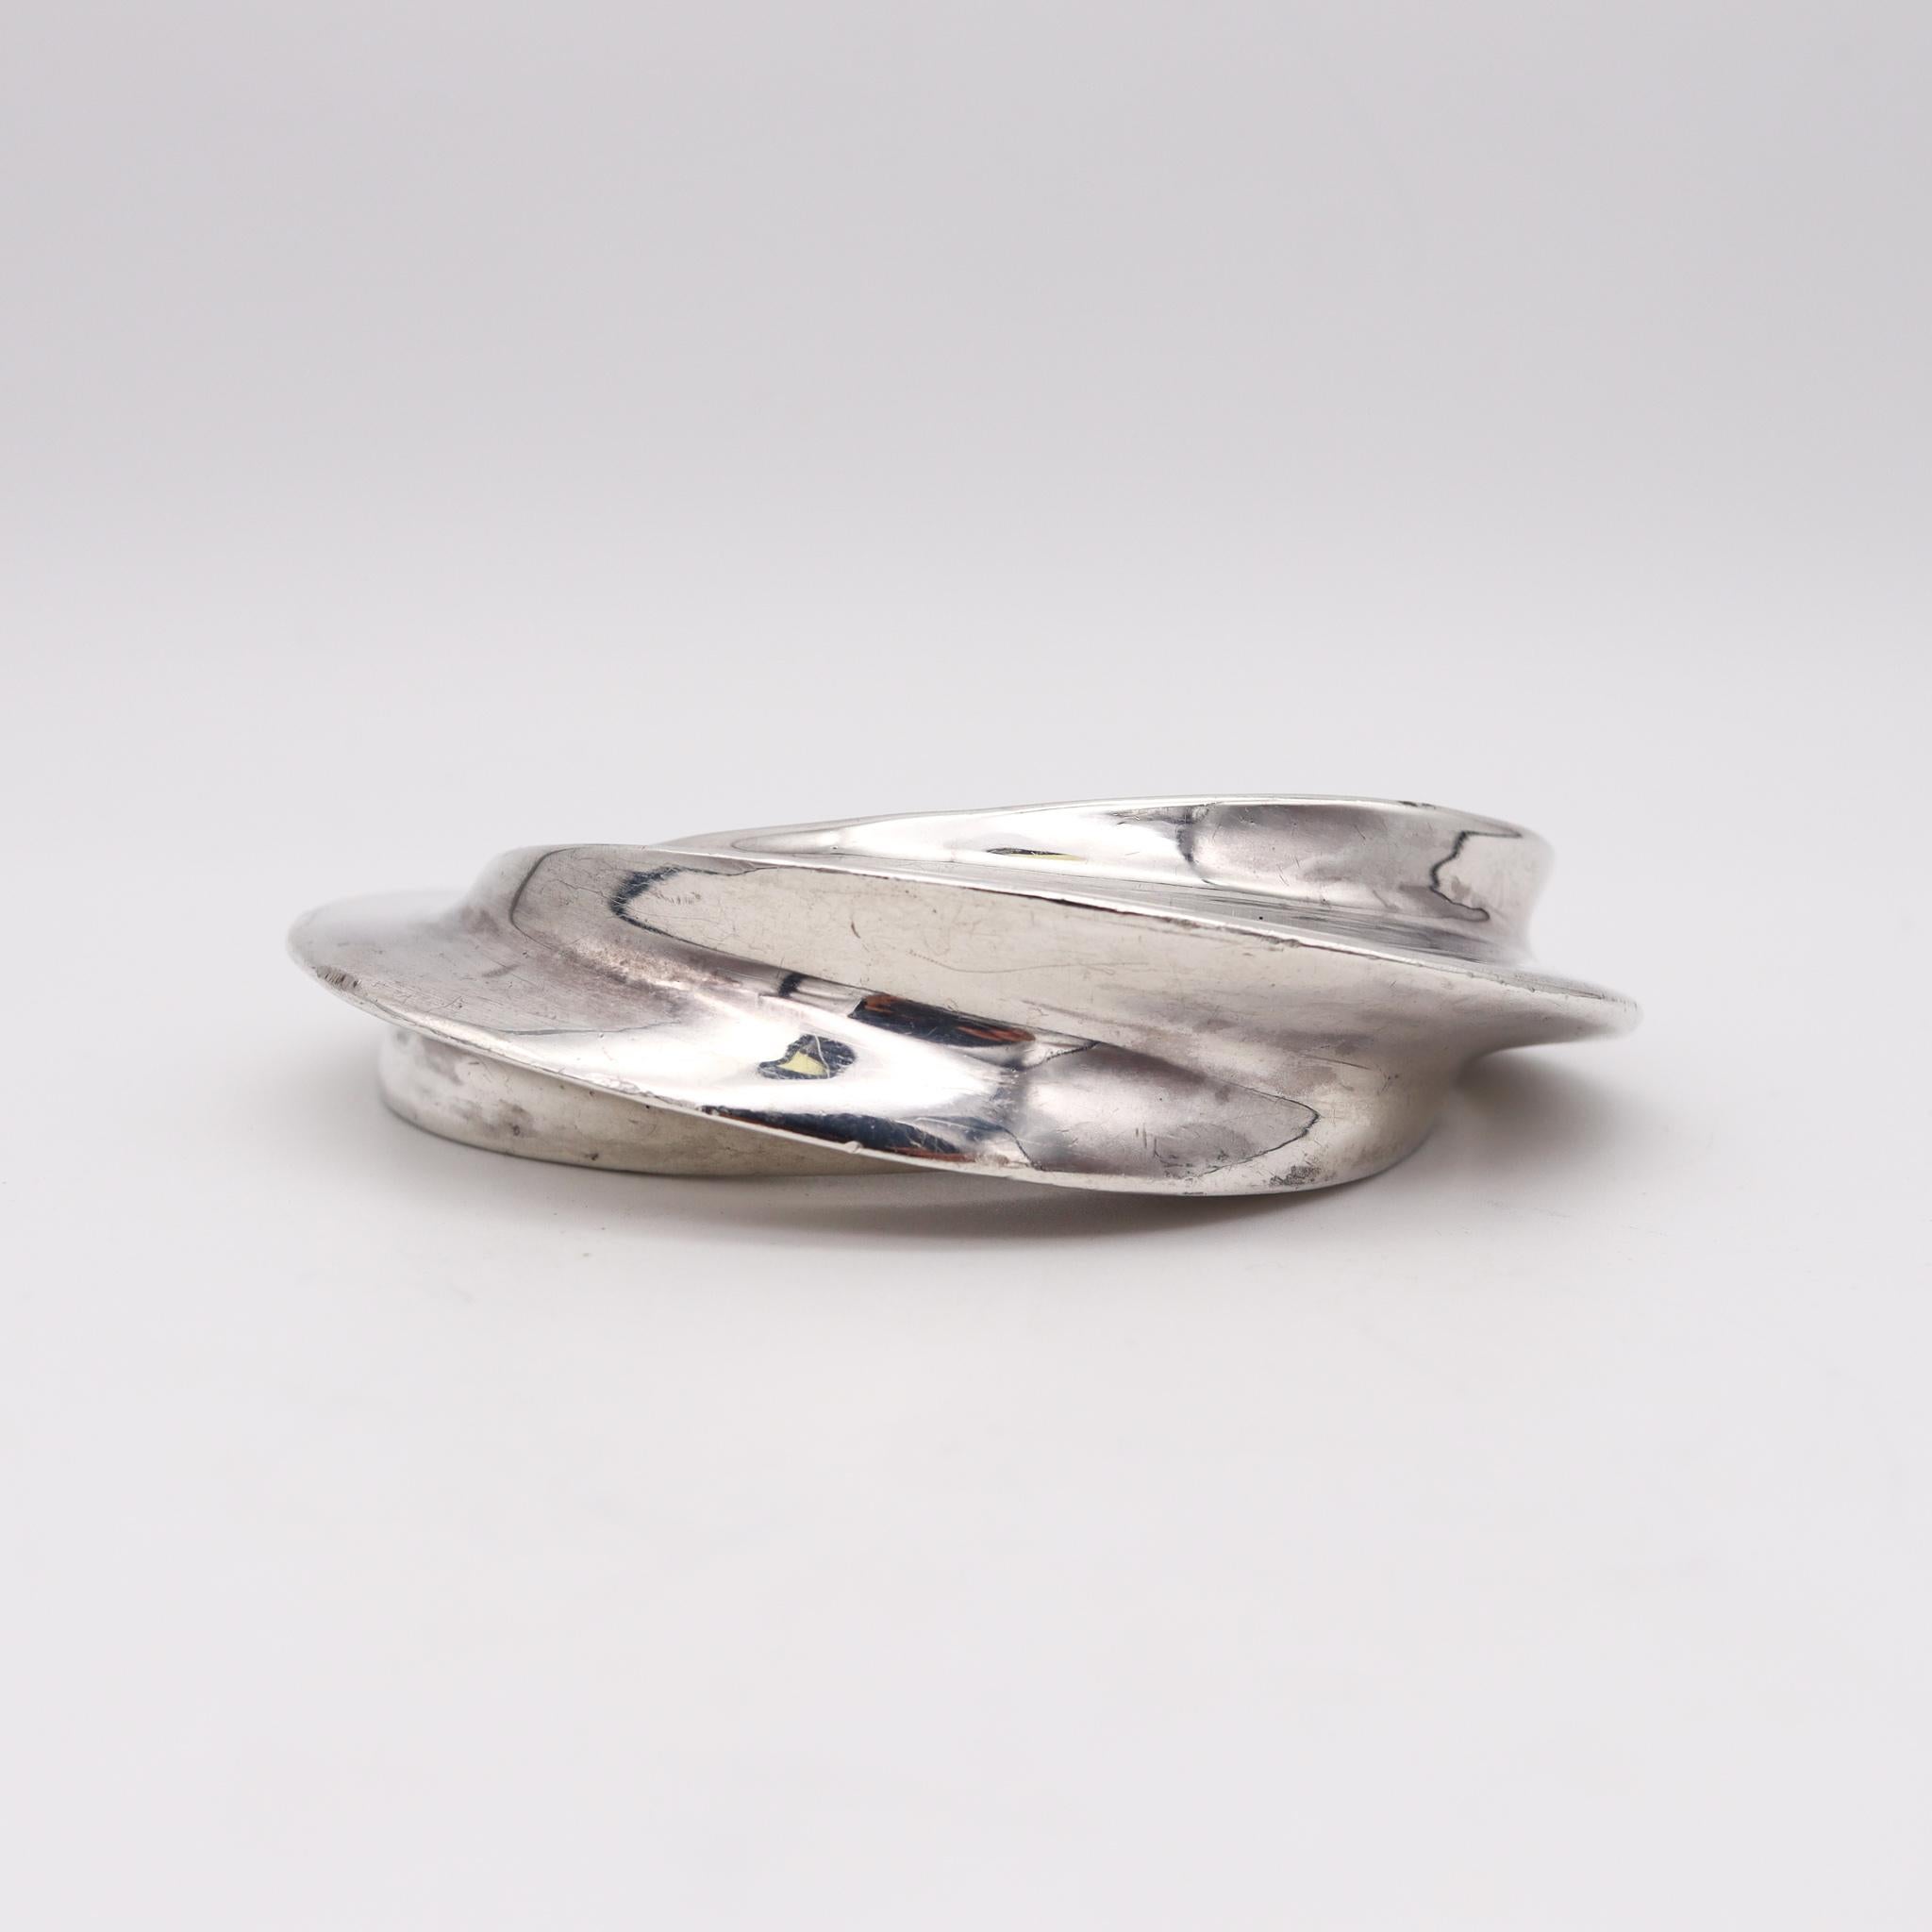 Bracelet manchette géométrique et ondulé conçu par Patricia Von Musulin.

Pièce vintage très moderne et audacieuse, créée à New York dans l'atelier de Patricia Von Musulin, dans les années 1980. Ce bracelet manchette sculptural a été soigneusement